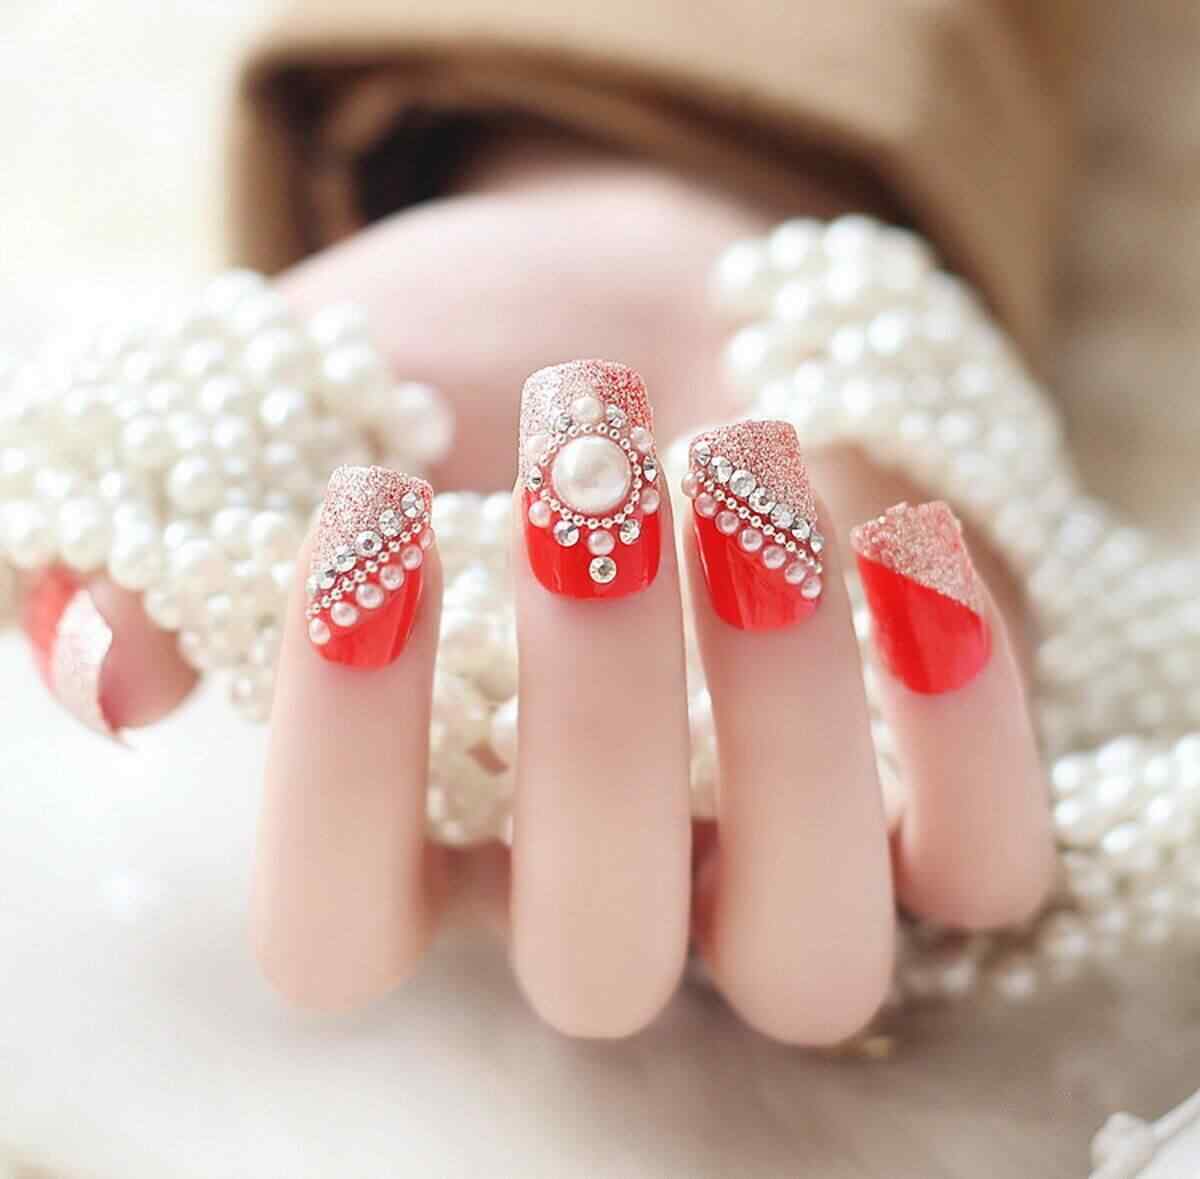 Este diseño de uñas con piedras y base roja me encanta